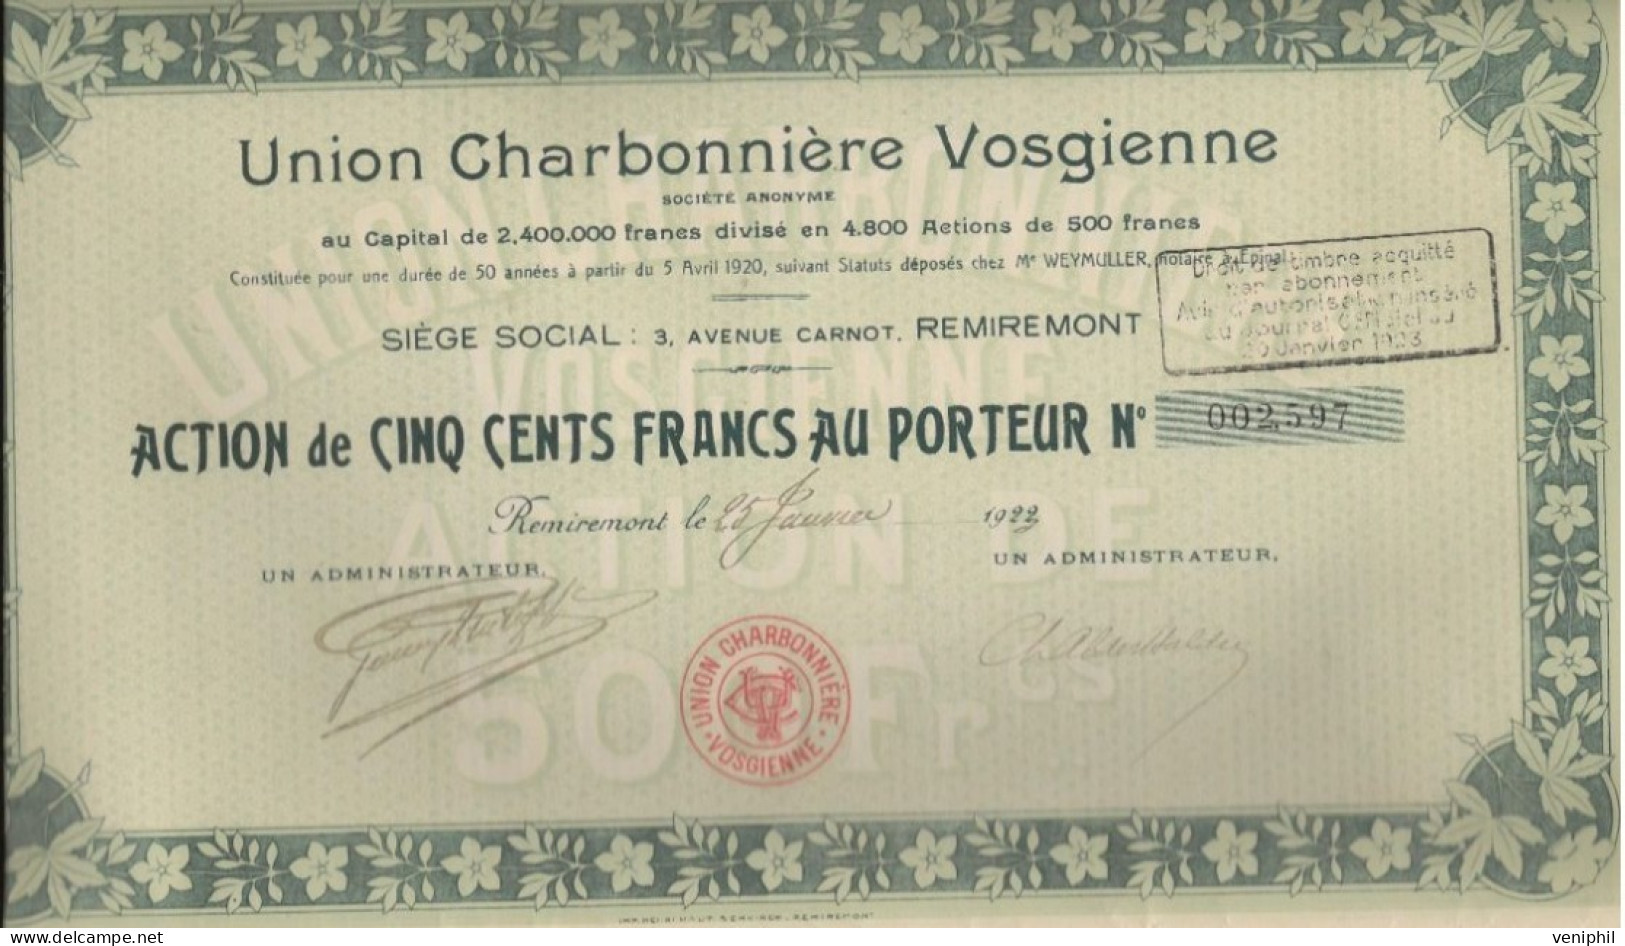 UNION CHARBONNIERE VOSGIENNE - LOT DE 4 ACTIONS DE CINQ CENT FRANCS -DIVISE EN 4800 ACTIONS - ANNEE 1922 - Bergbau